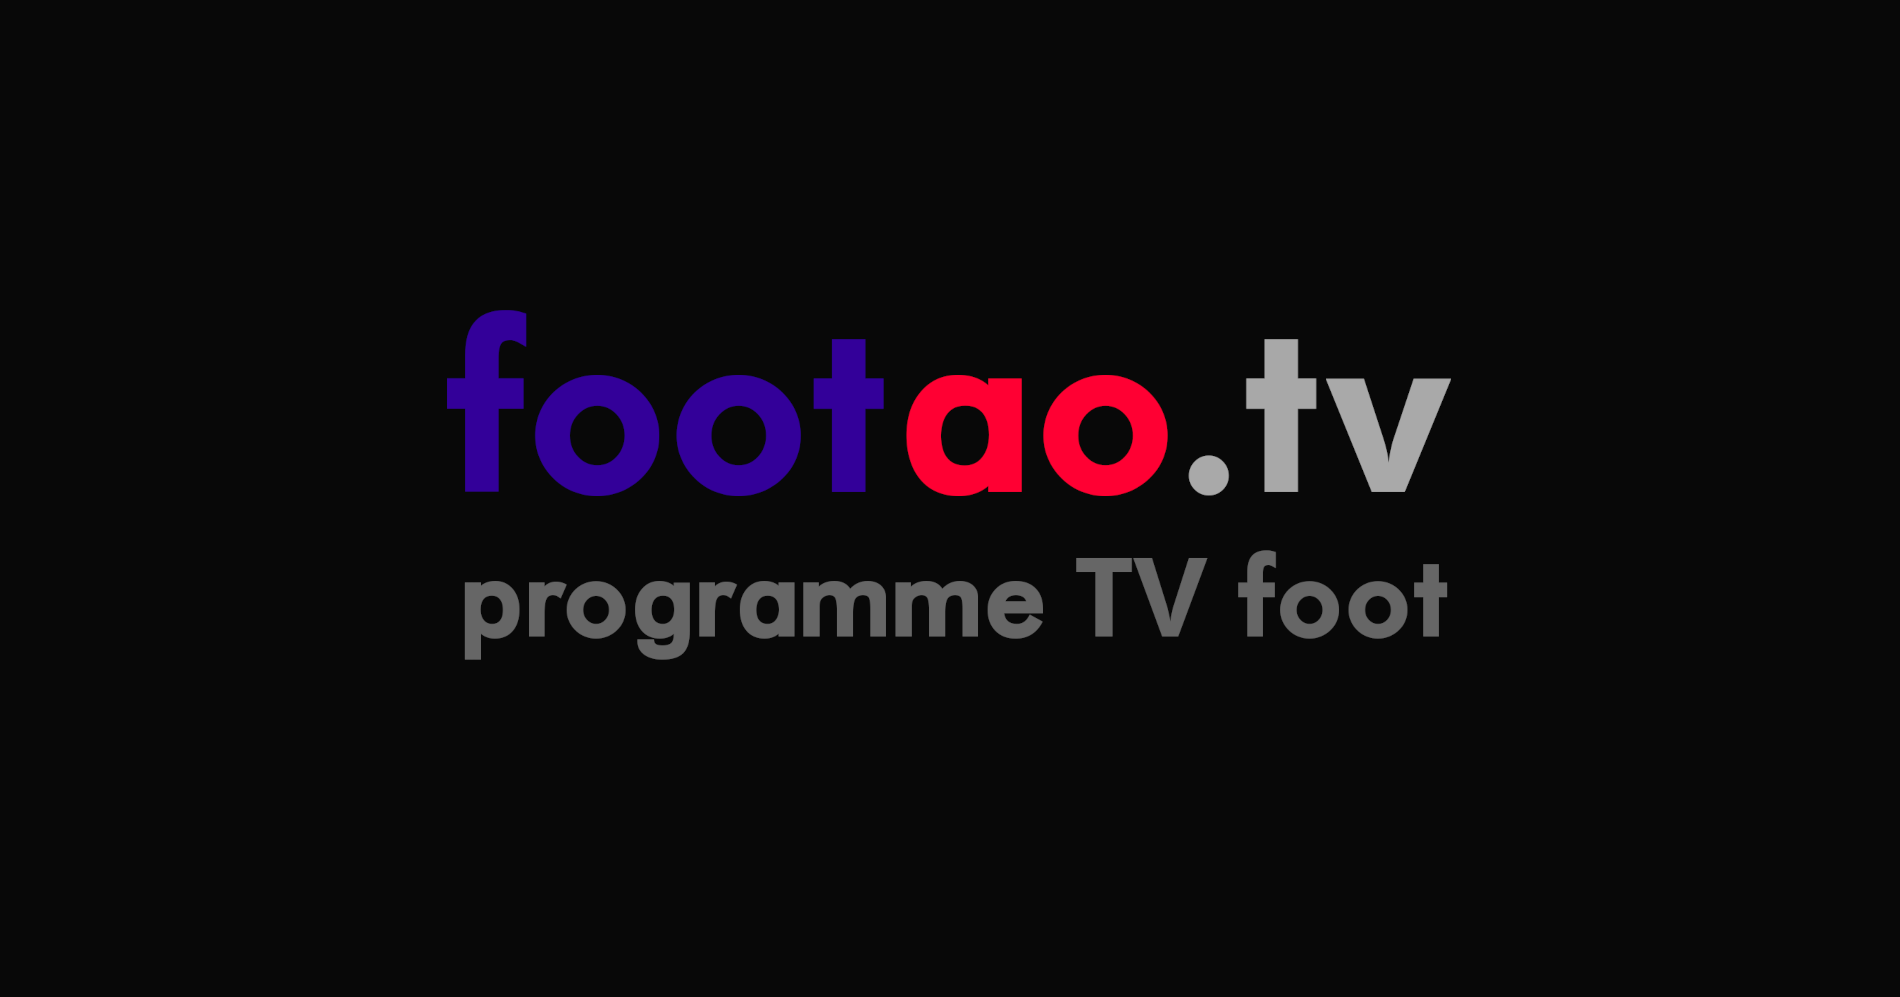 programme TV foot diffusion télé retransmission